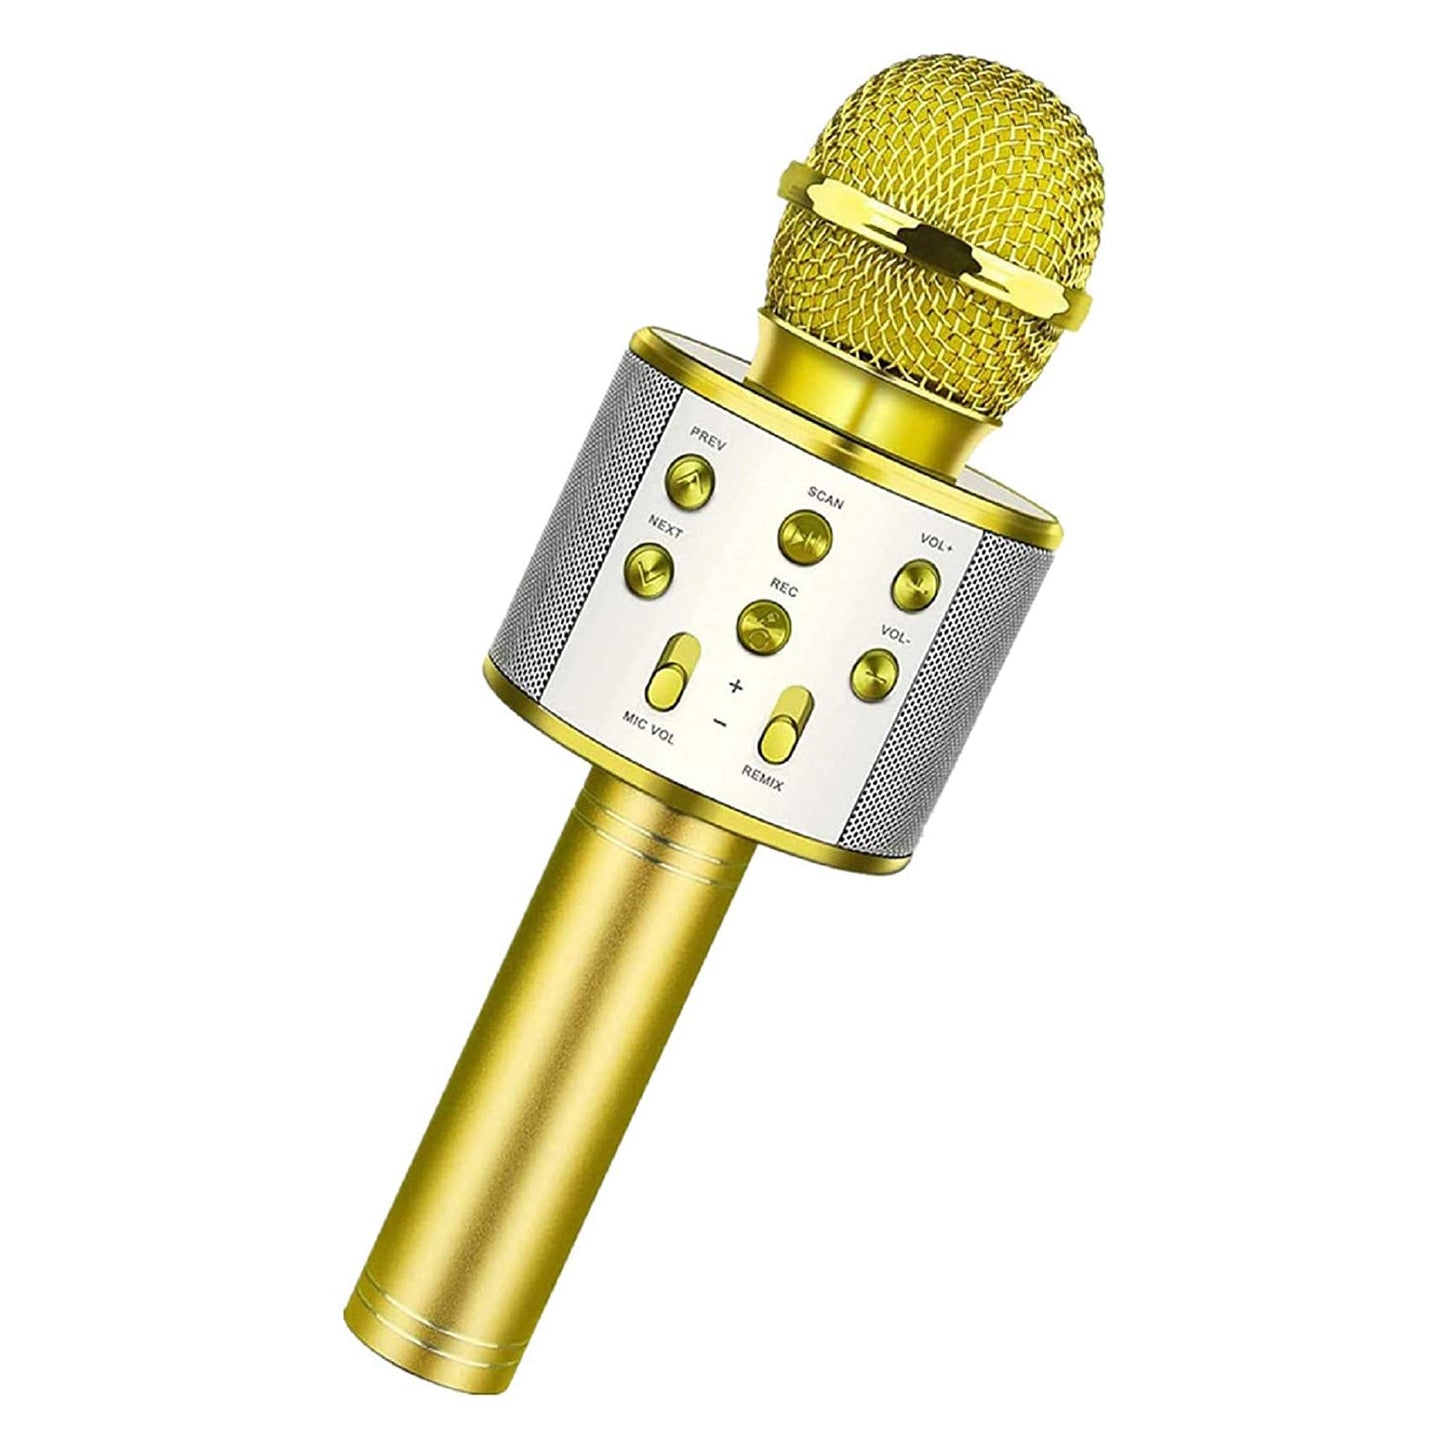 WSTER WS-858 Portable Wireless Karaoke Microphone